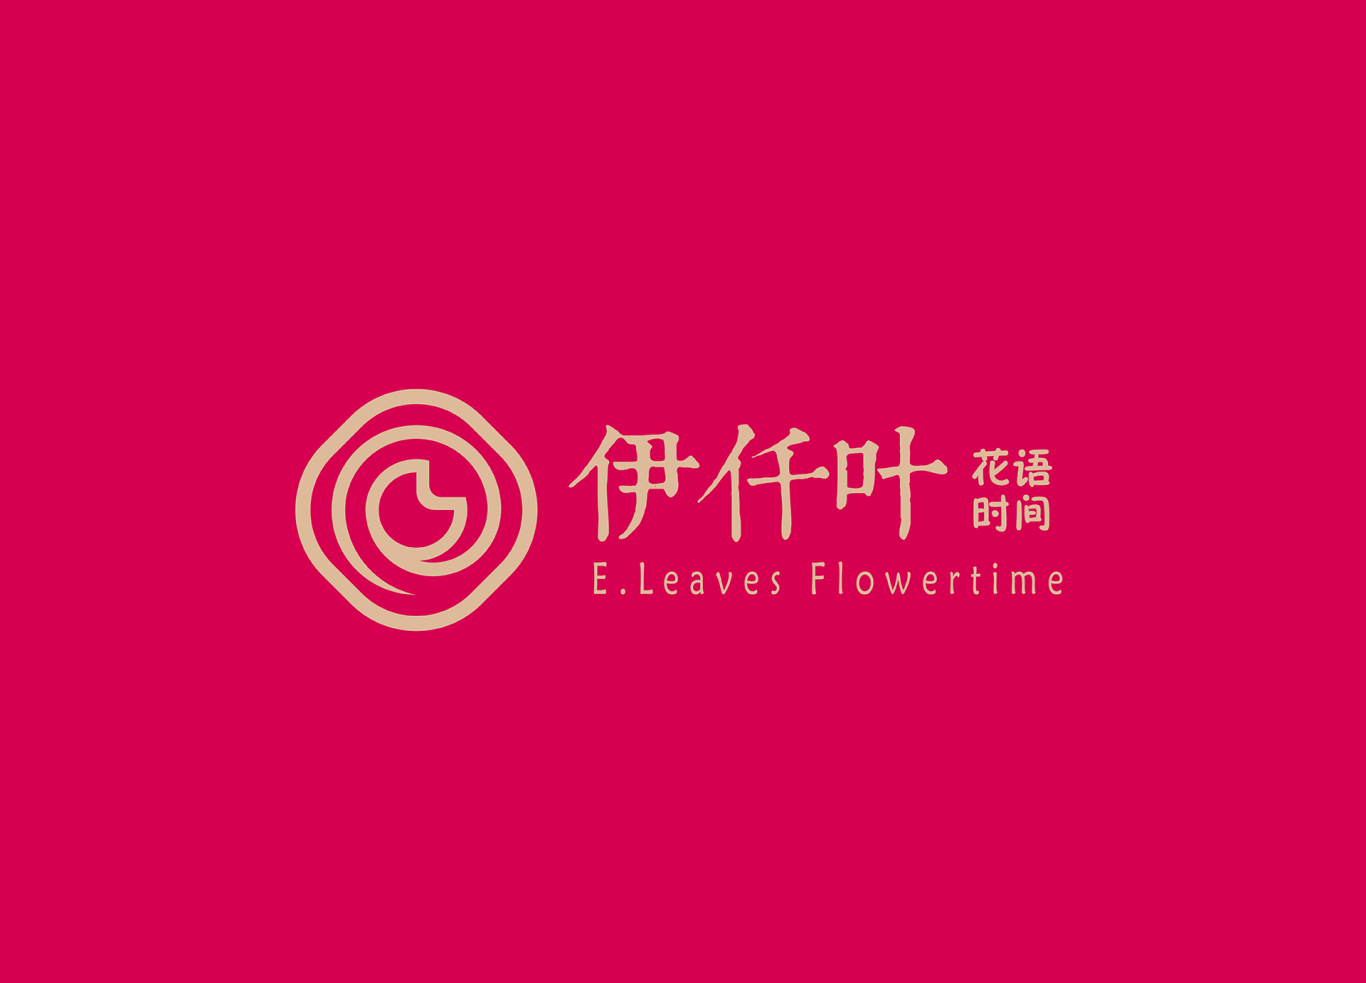 伊仟叶·花语时间(玫瑰鲜花饼)品牌形象设计图2